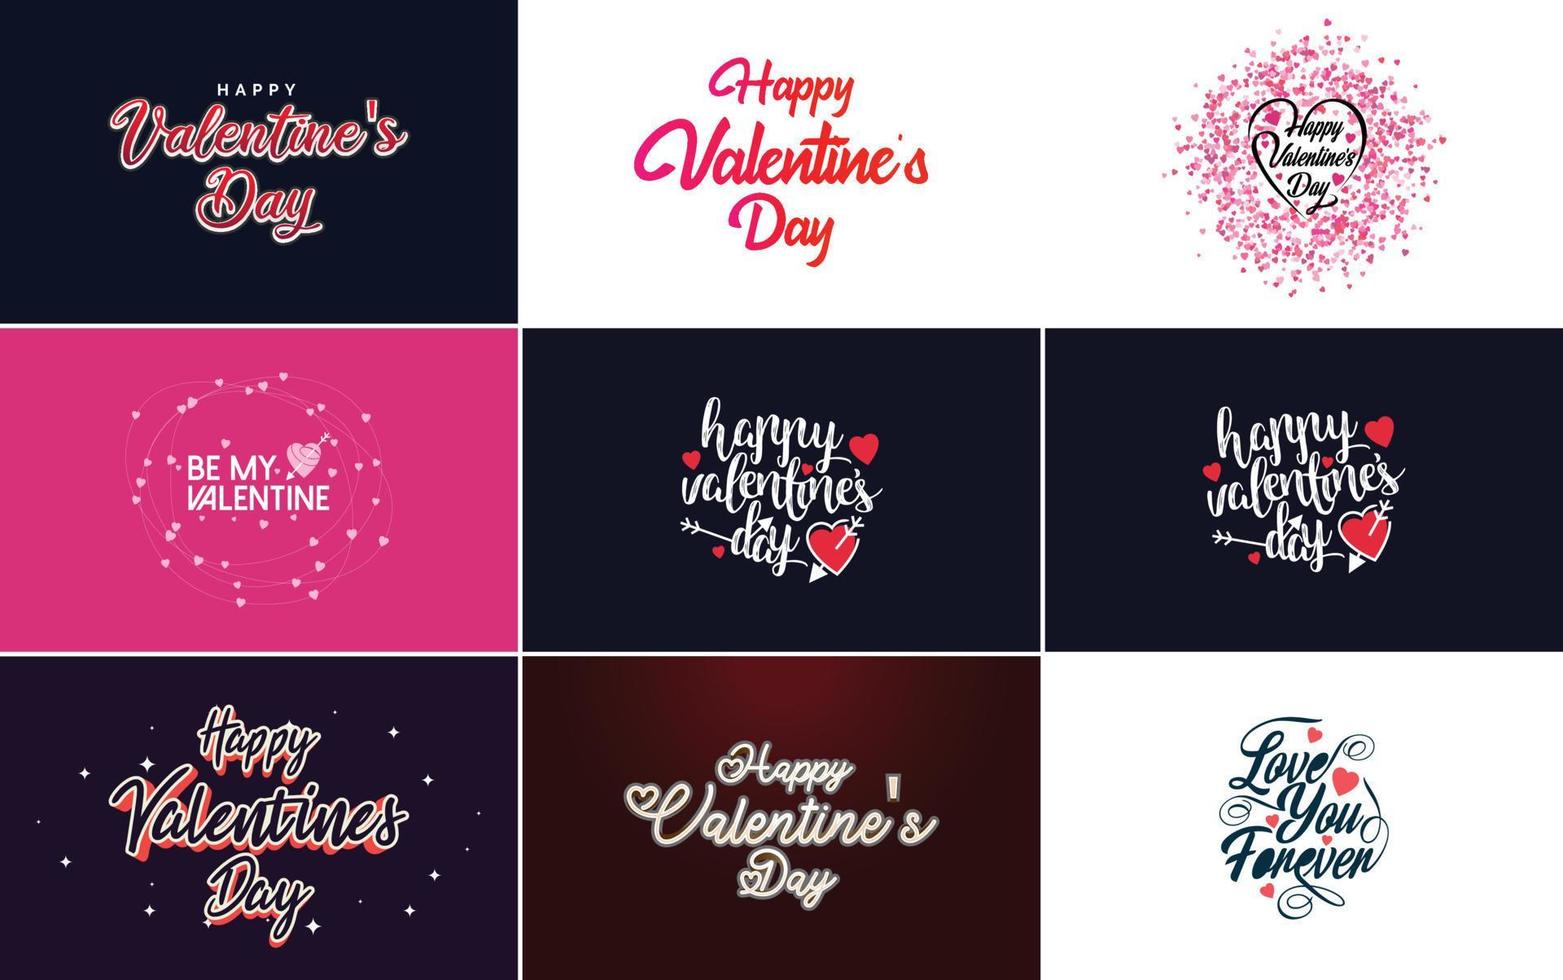 Sé mi letra de San Valentín con un diseño de corazón. adecuado para usar en tarjetas e invitaciones del día de san valentín vector